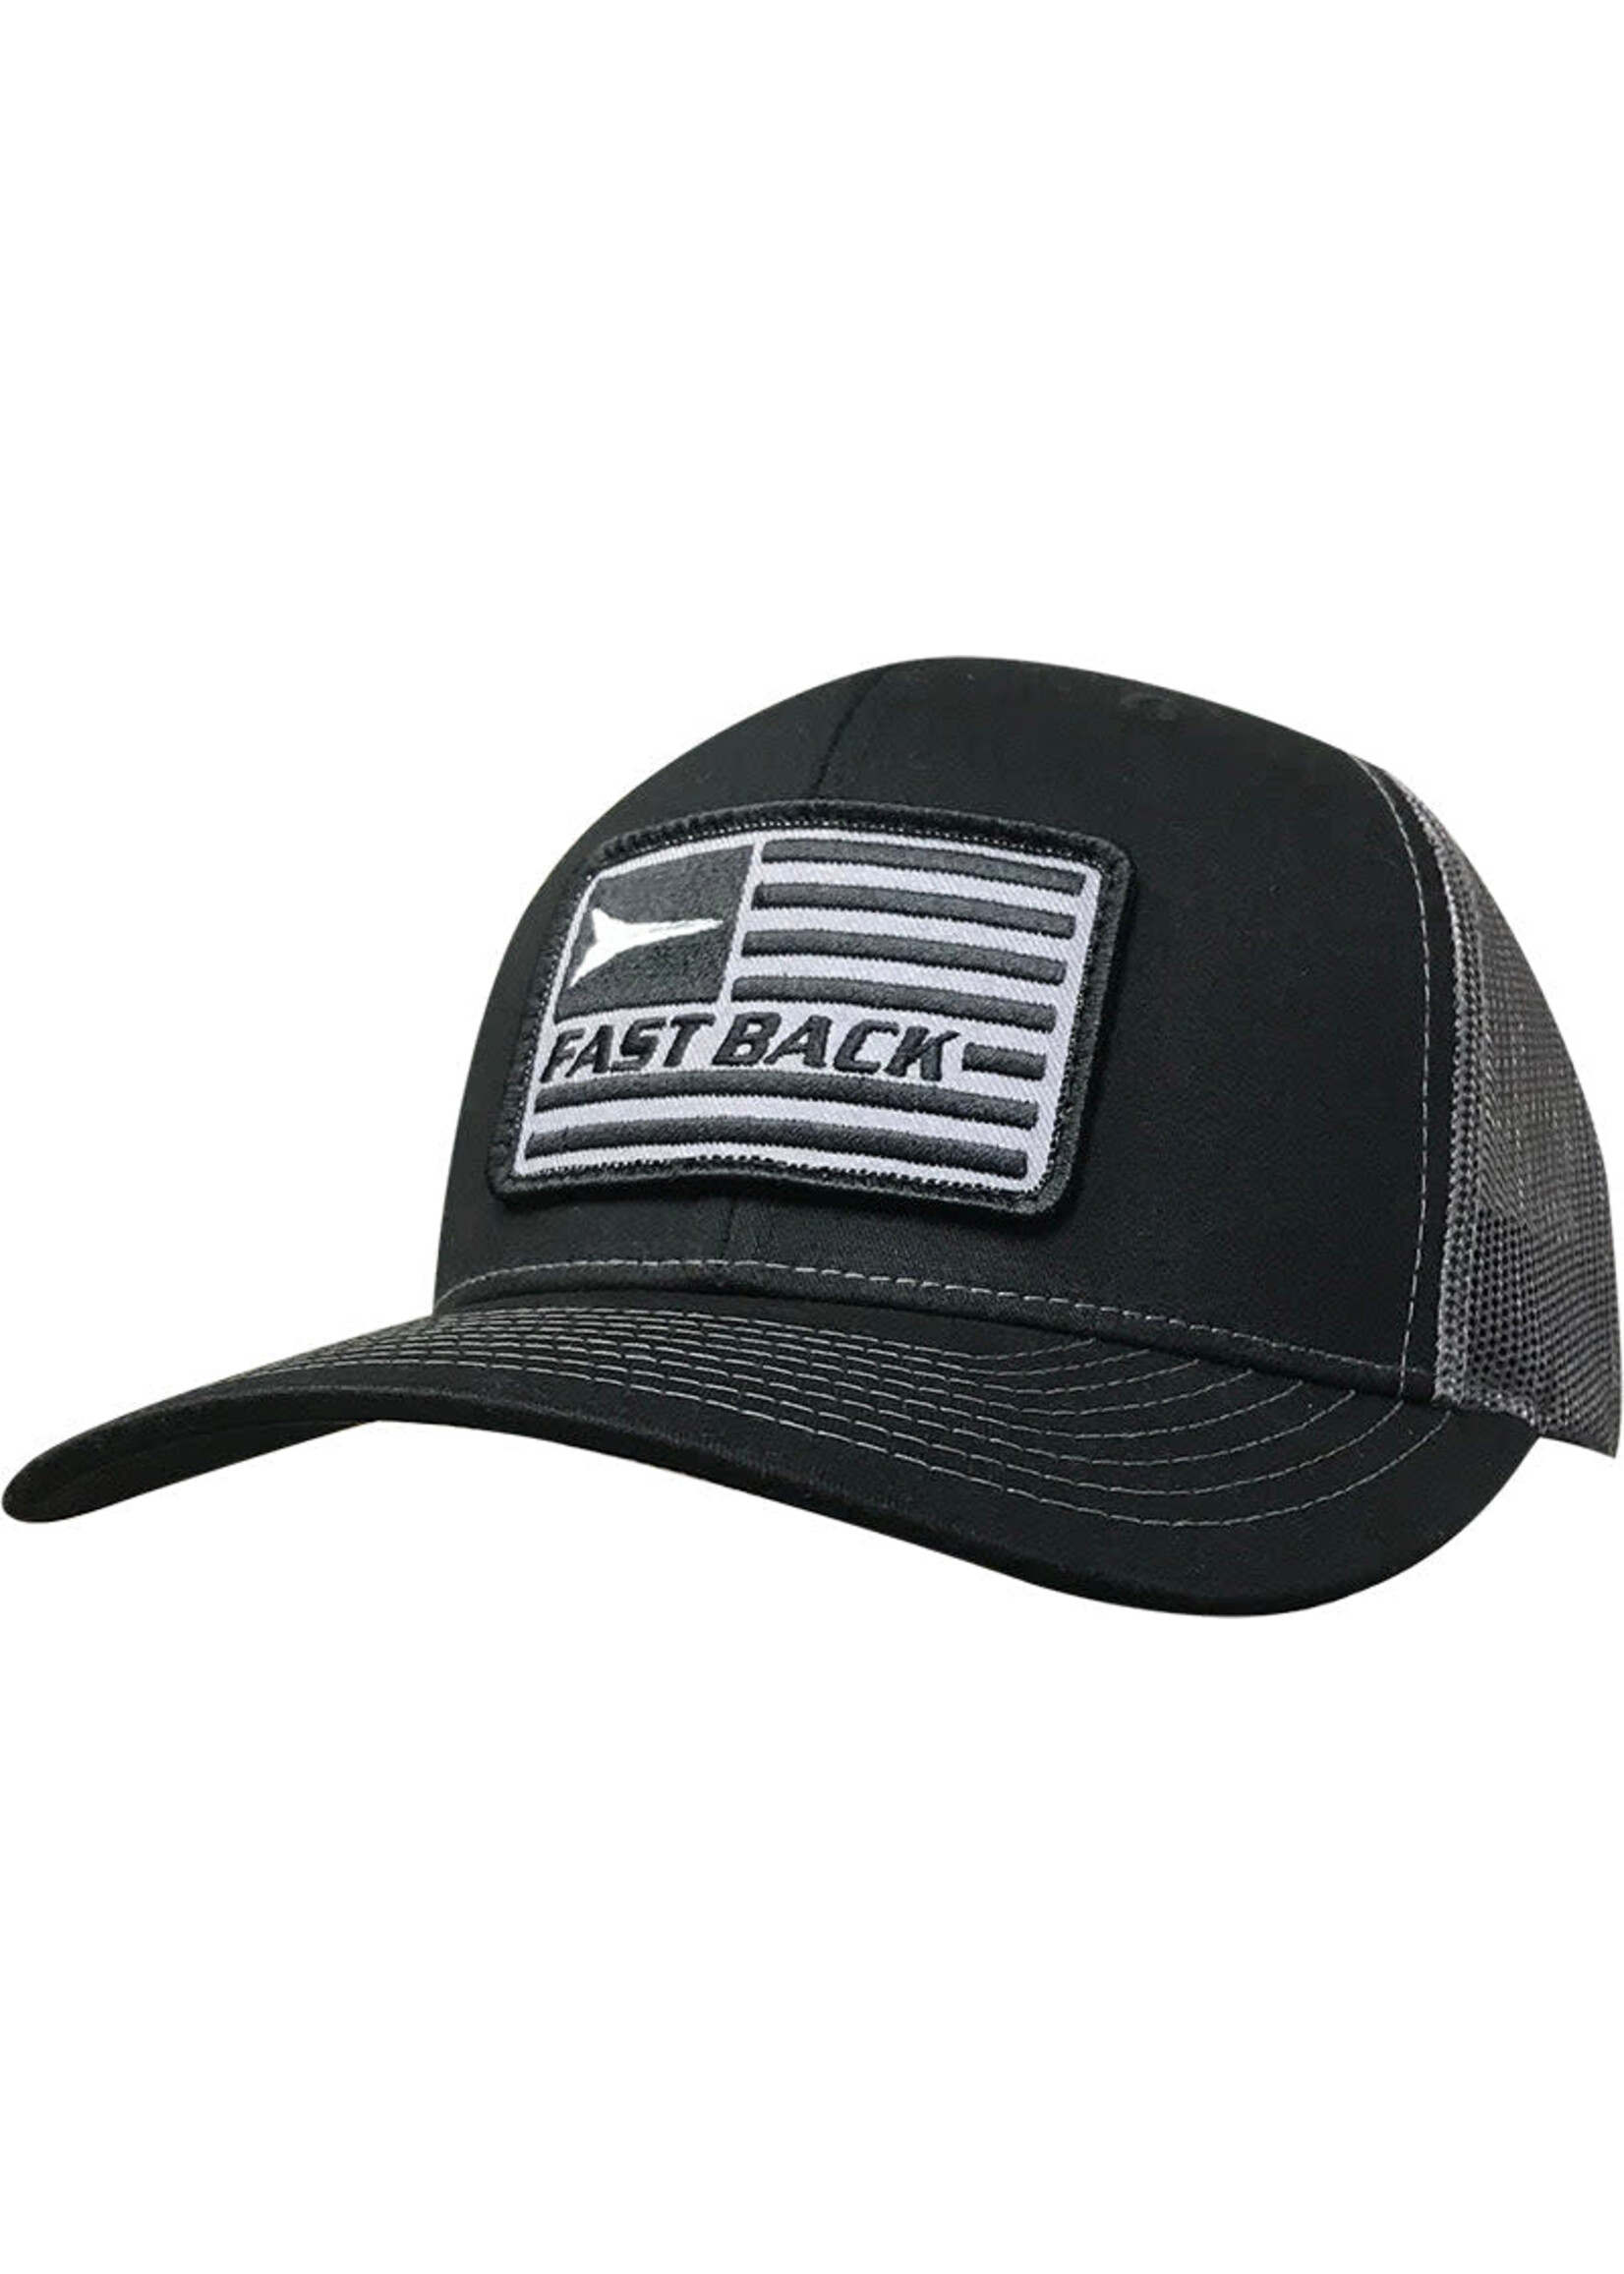 Fast Back Fast Back Hat - Black/Charcoal